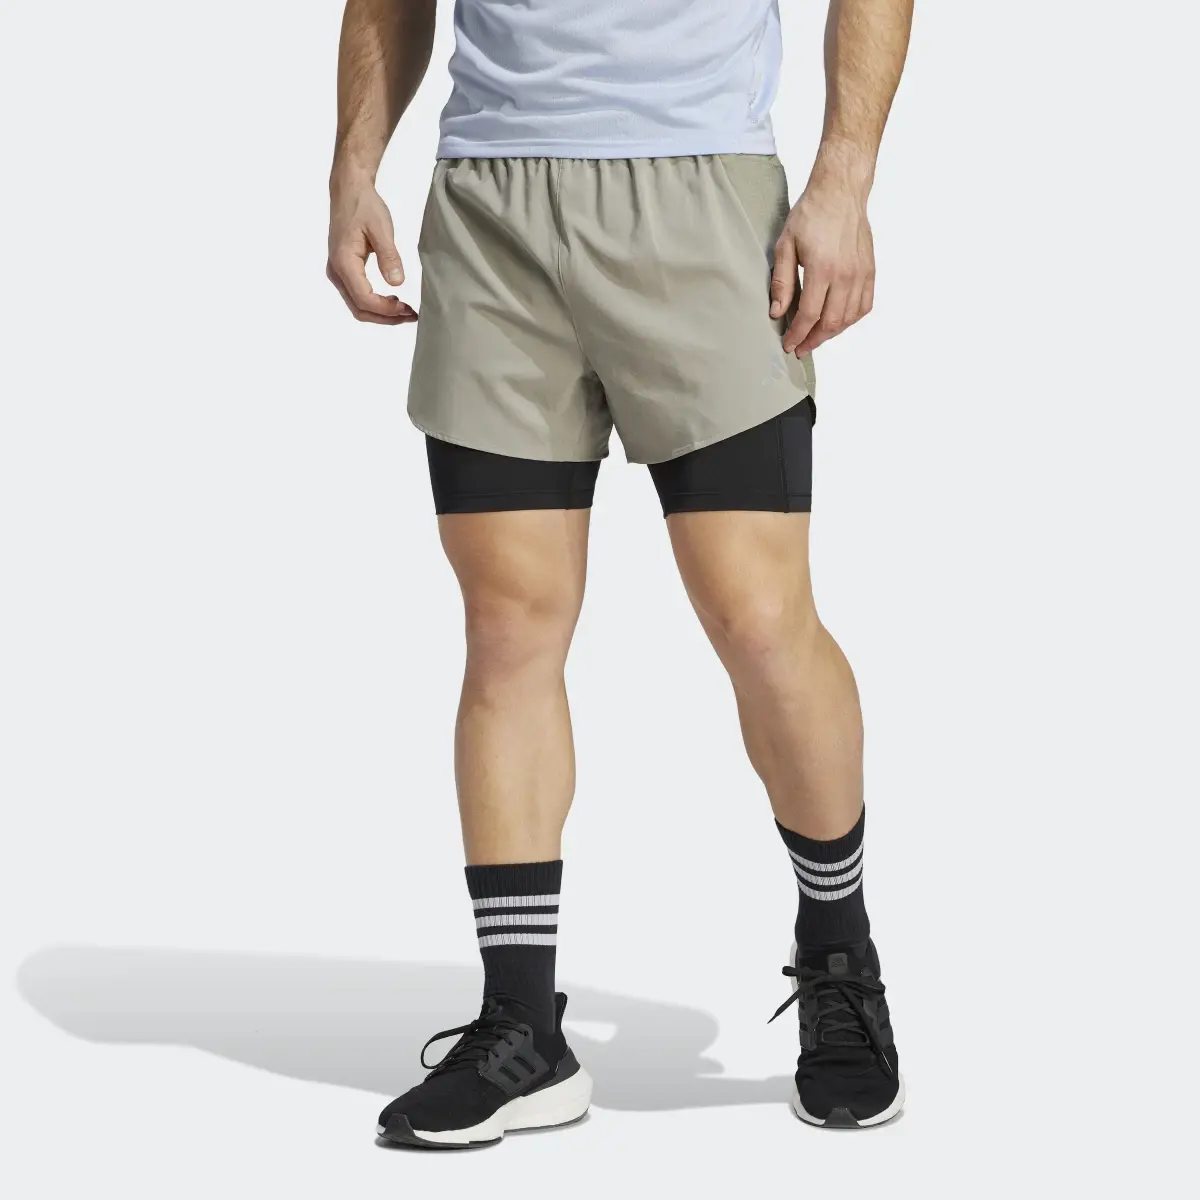 Adidas Shorts Designed 4 Running 2-en-1. 1